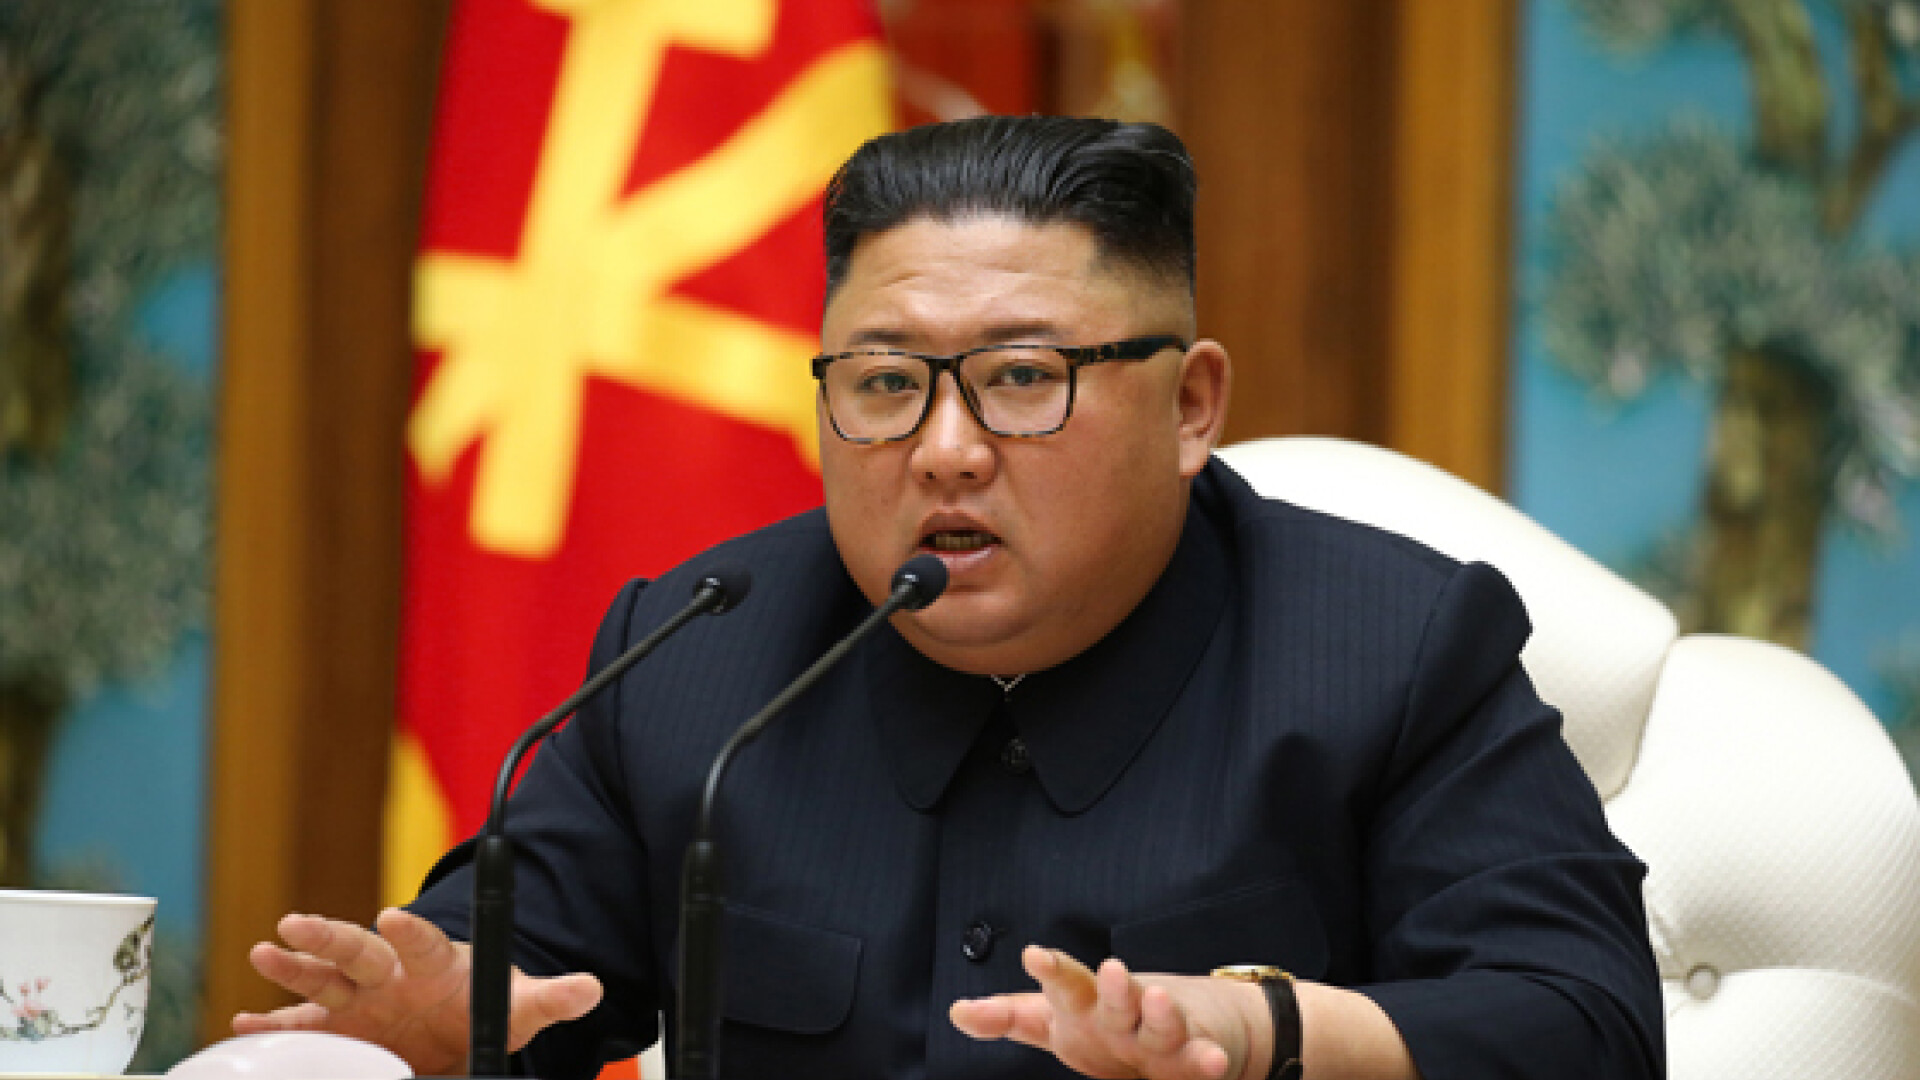 Ultimele imagini oficiale cu liderul nord-coreean Kim Jong-un - 13